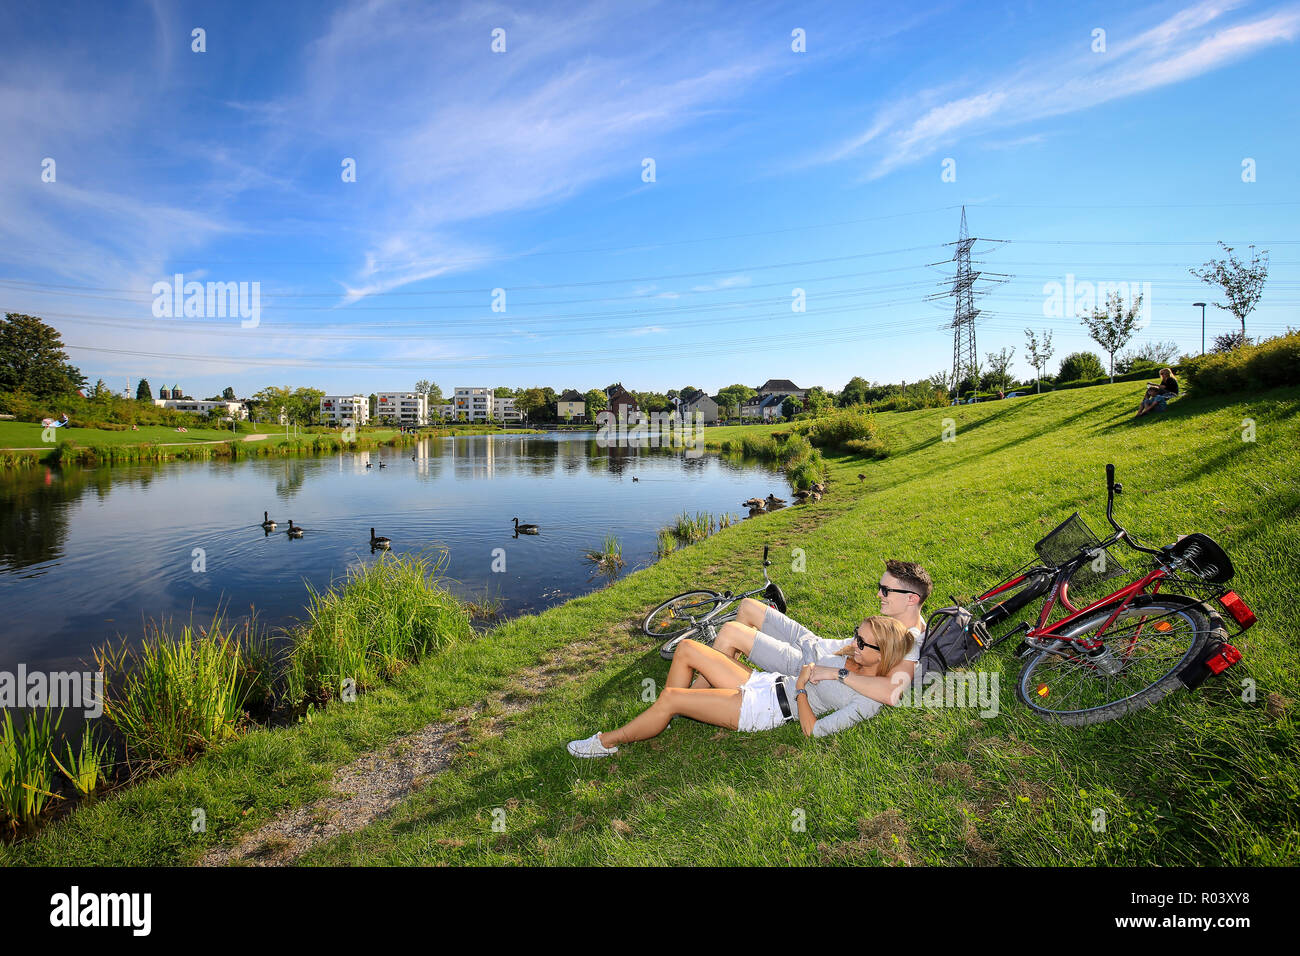 Essen, área de Ruhr, Alemania, el proyecto de desarrollo urbano Niederfeldsee, joven pareja reside en la pradera Foto de stock